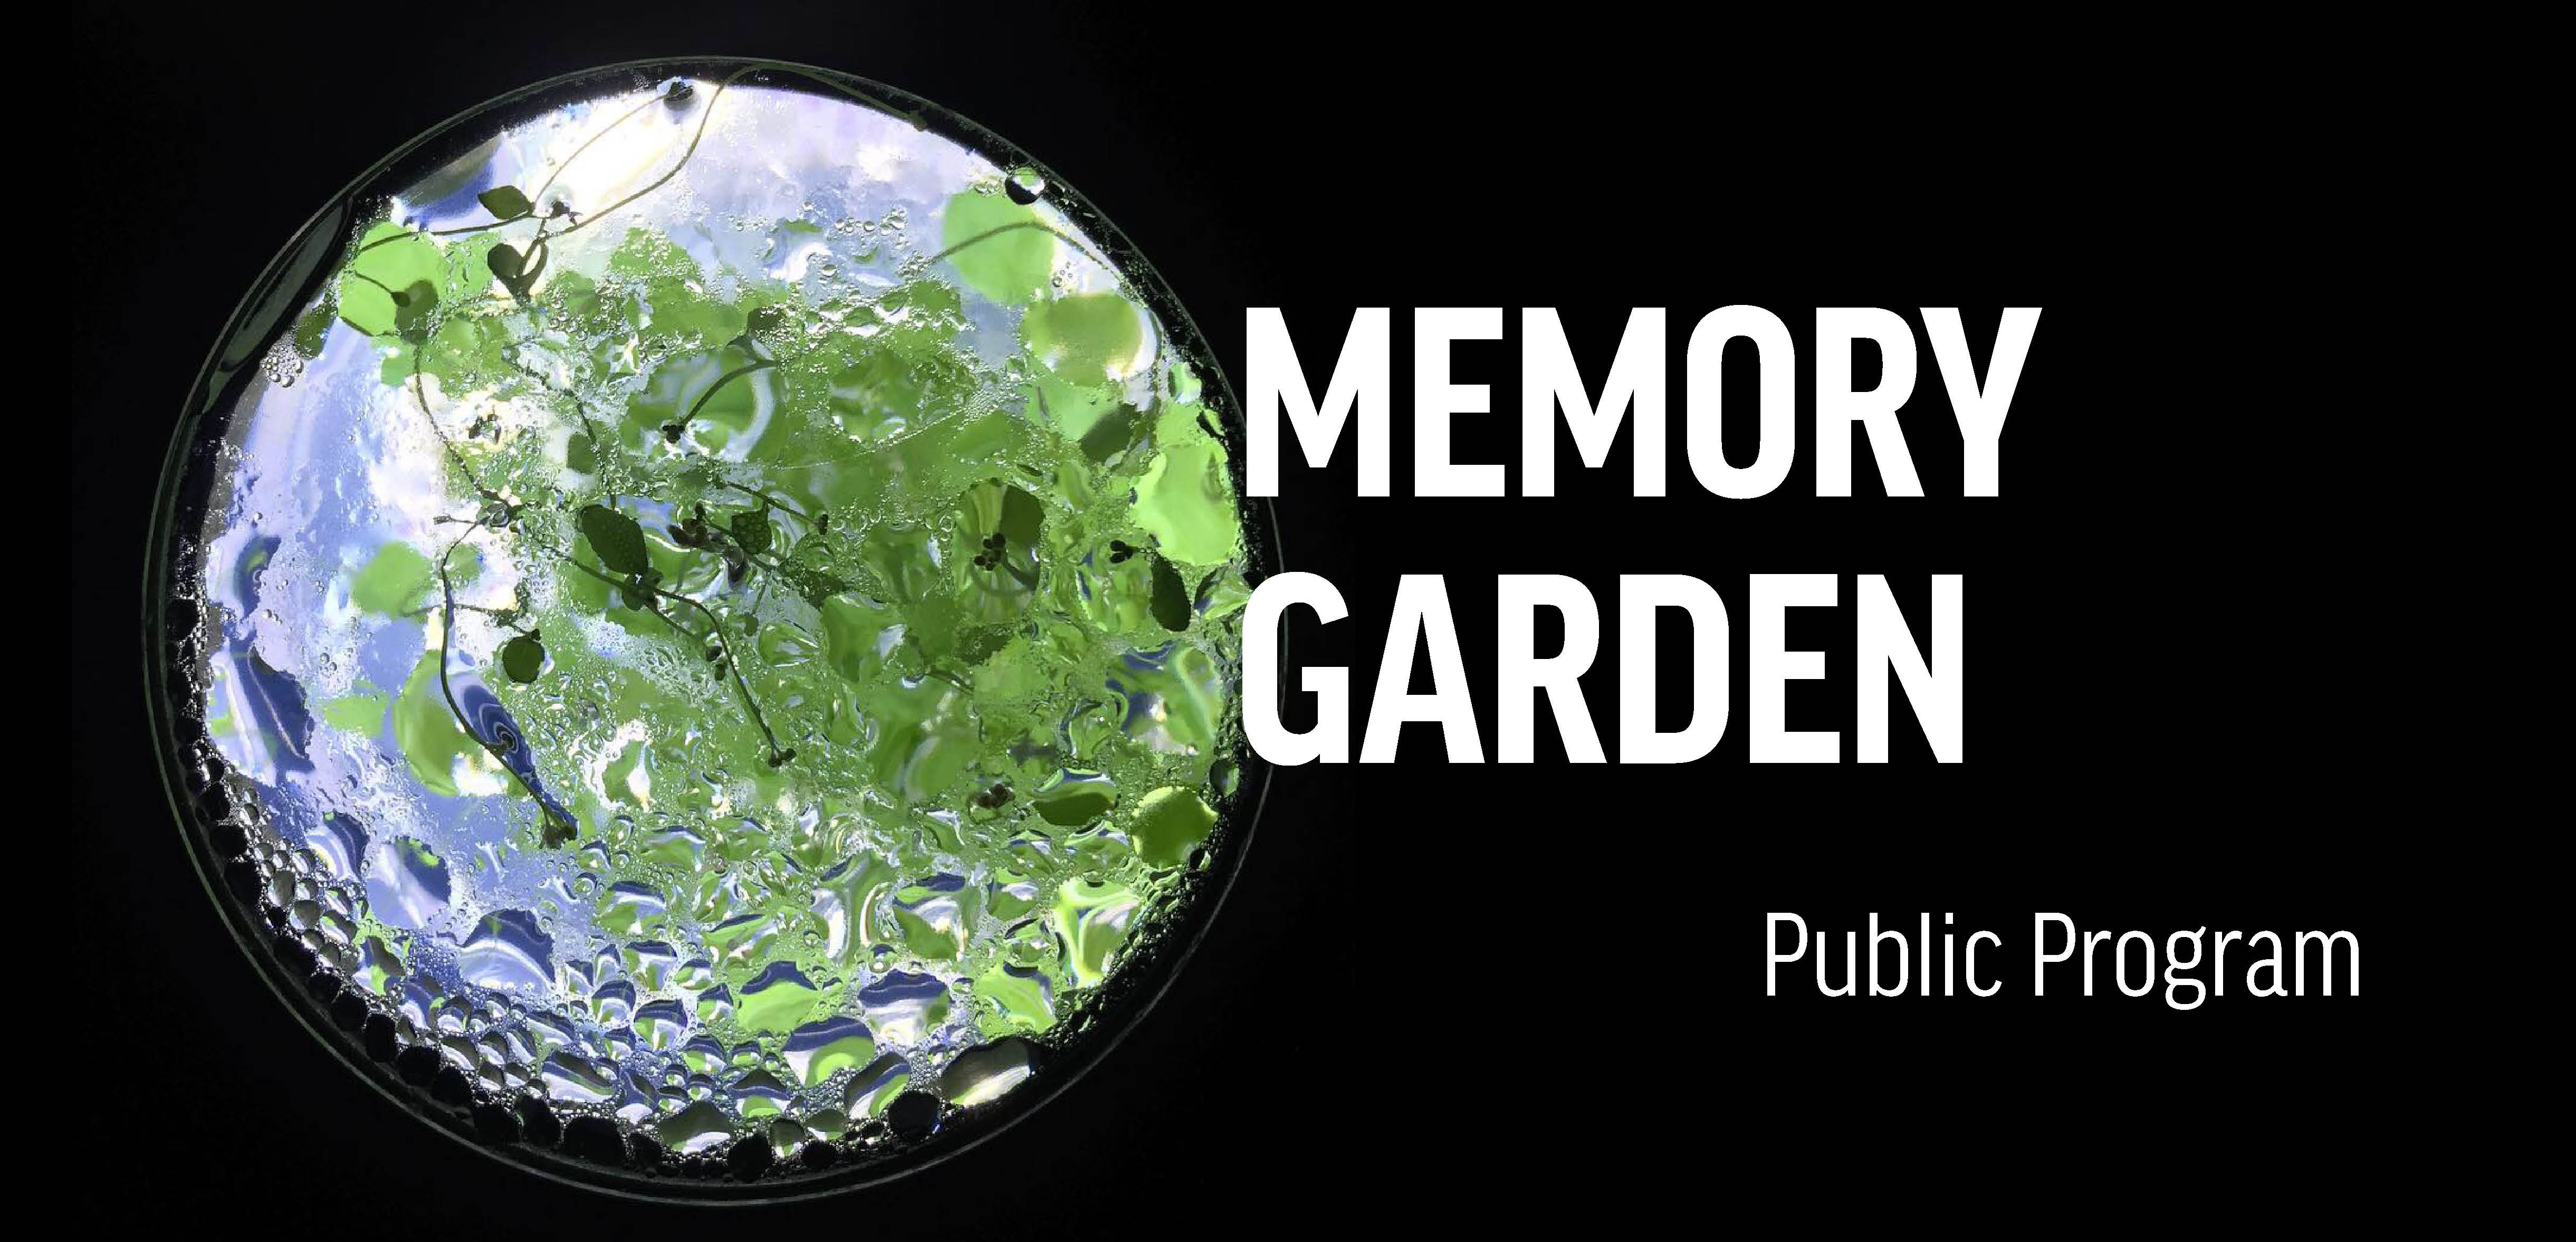 Публічна програма до виставки  Сад пам’яті